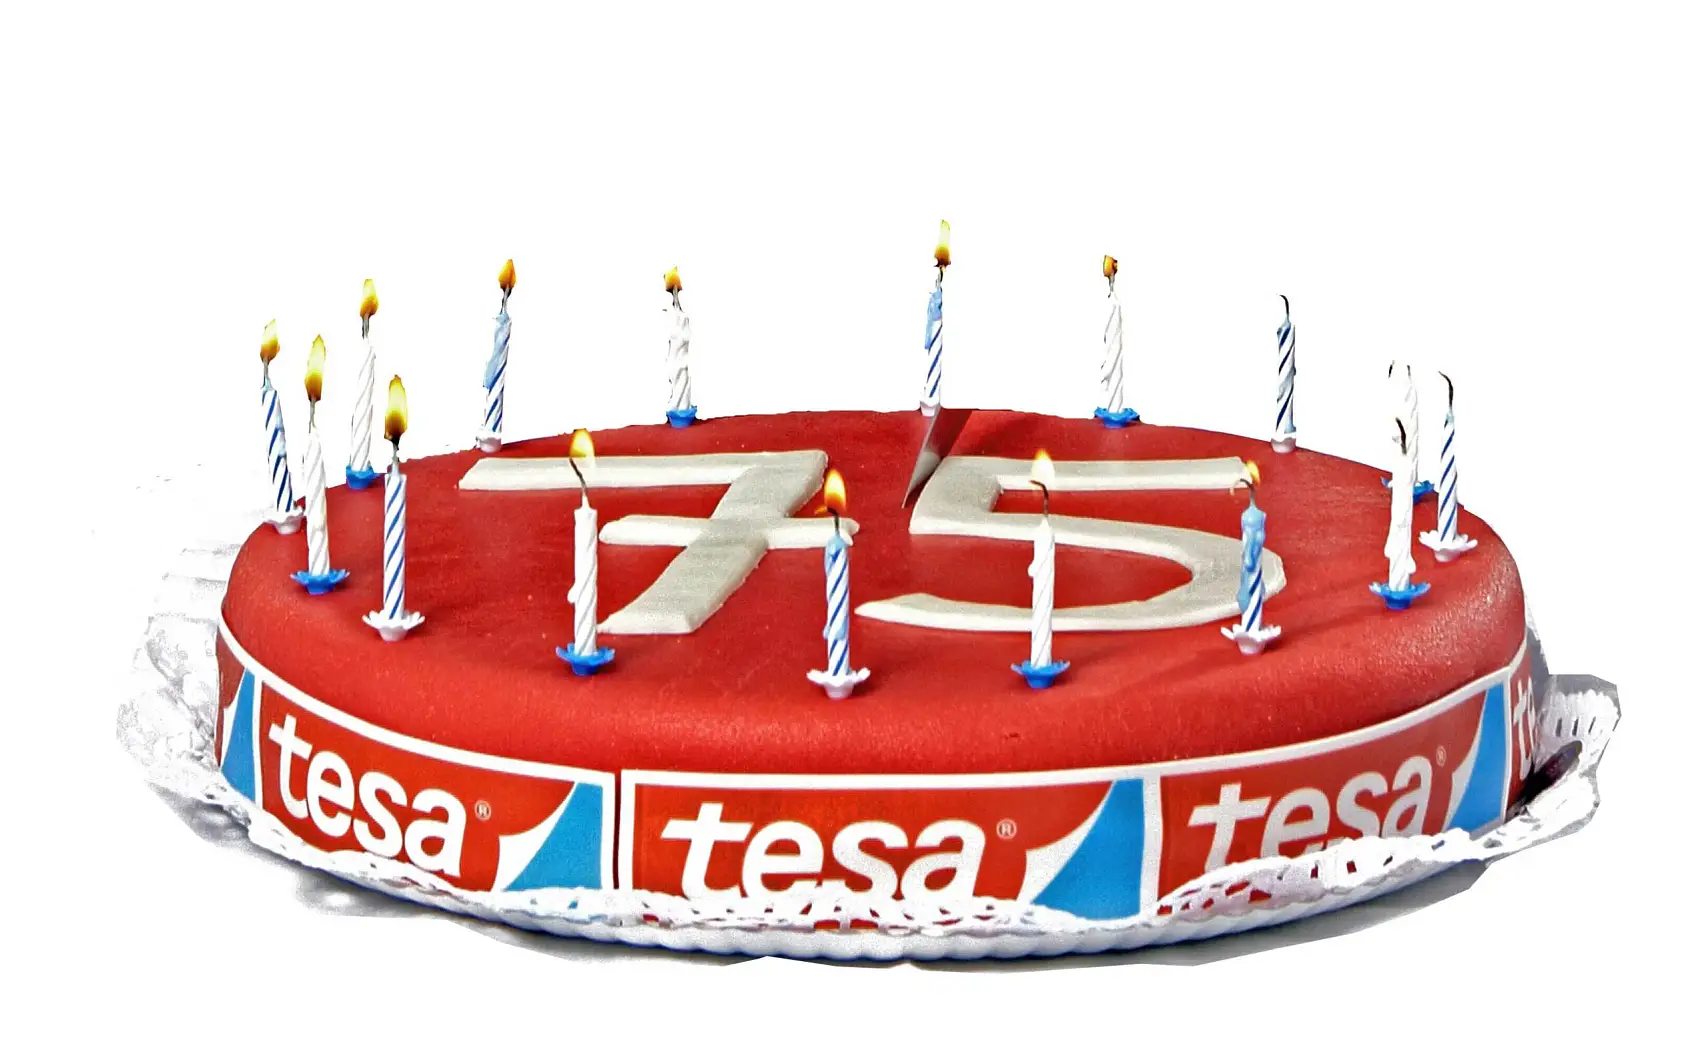 2011 年德莎举行成立 75 周年纪念庆典